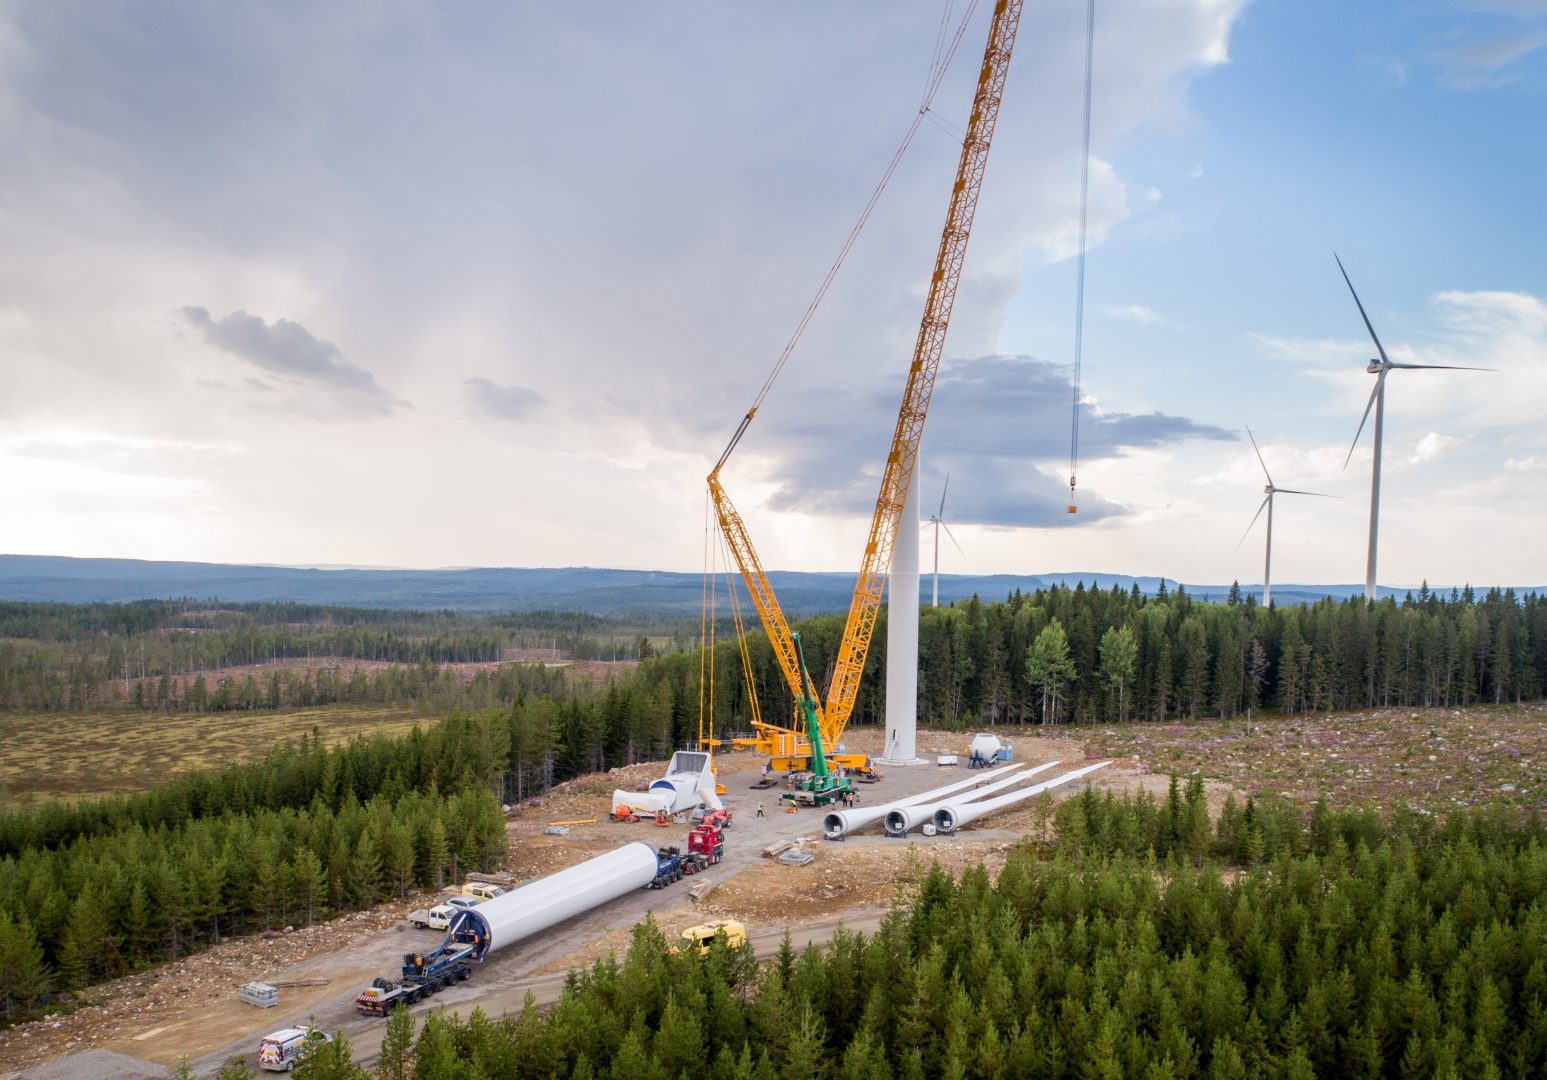 OX2 anunță 4 proiecte eoliene de 572 MW, care au deja aviz tehnic de racordare. Unul dintre el ar putea fi gata chiar în 2025